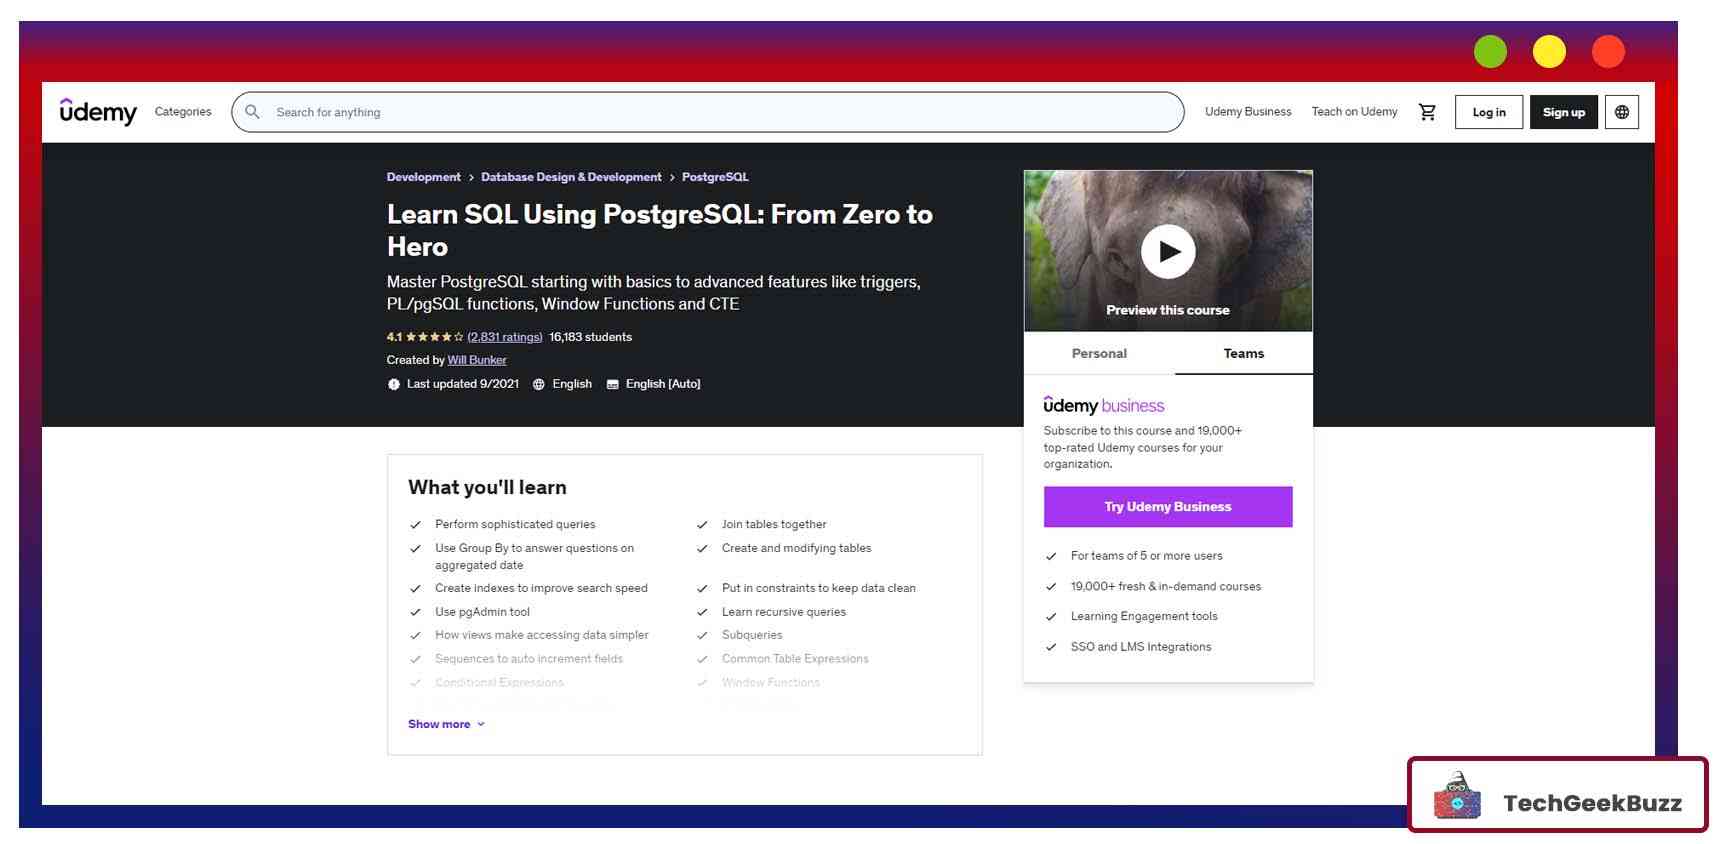 Learn SQL Using PostgreSQL: From Zero to Hero